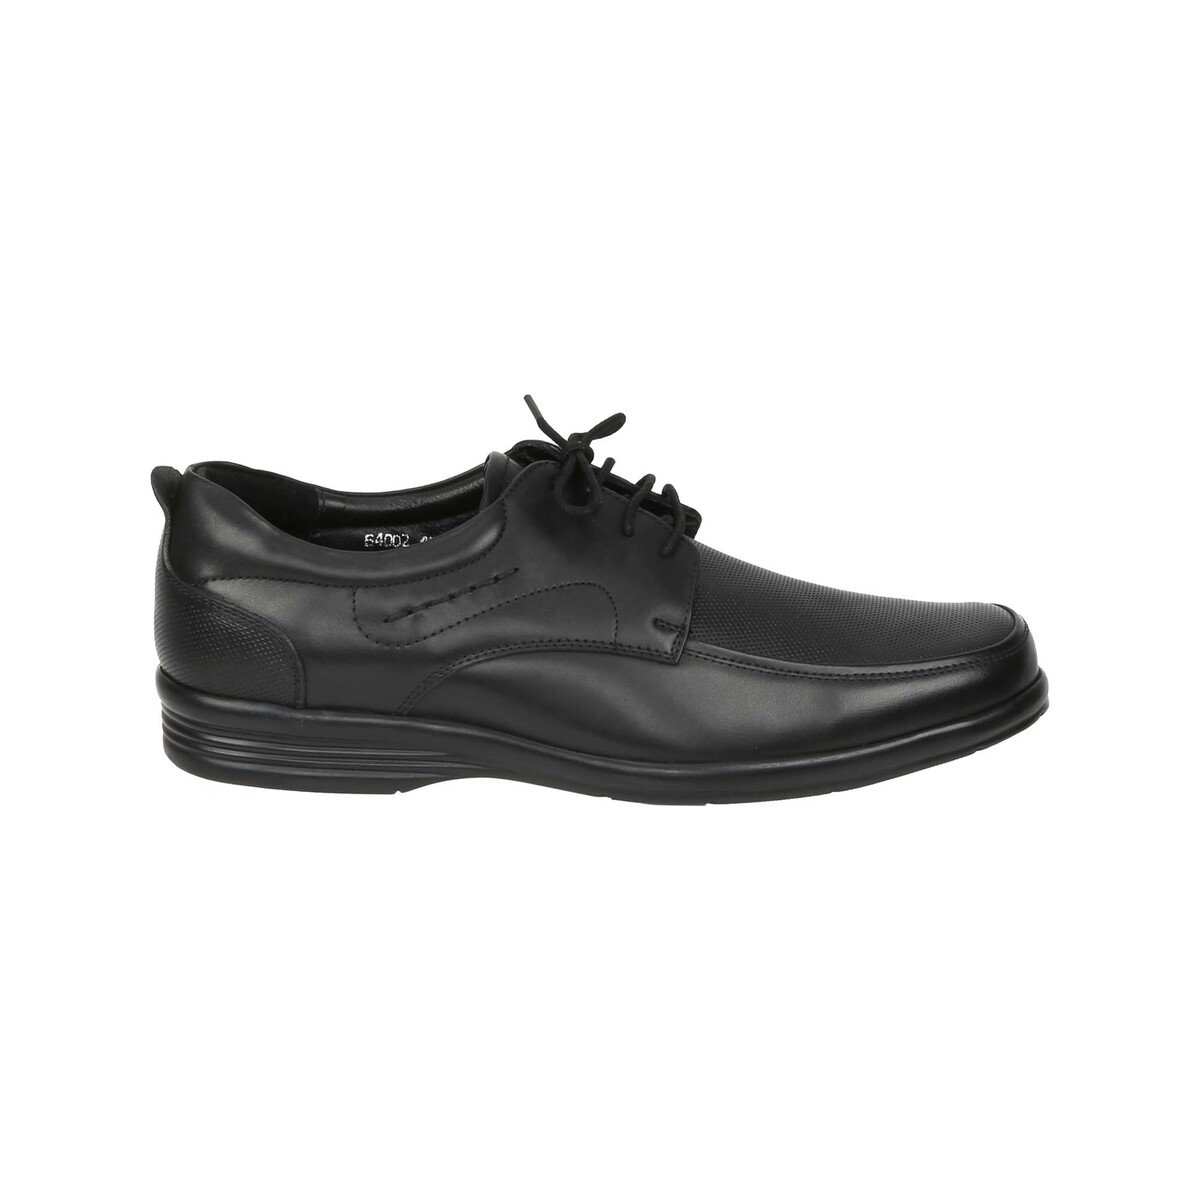 Von Wellx Men's Formal Shoes 64002 Black, 45 Online at Best Price ...